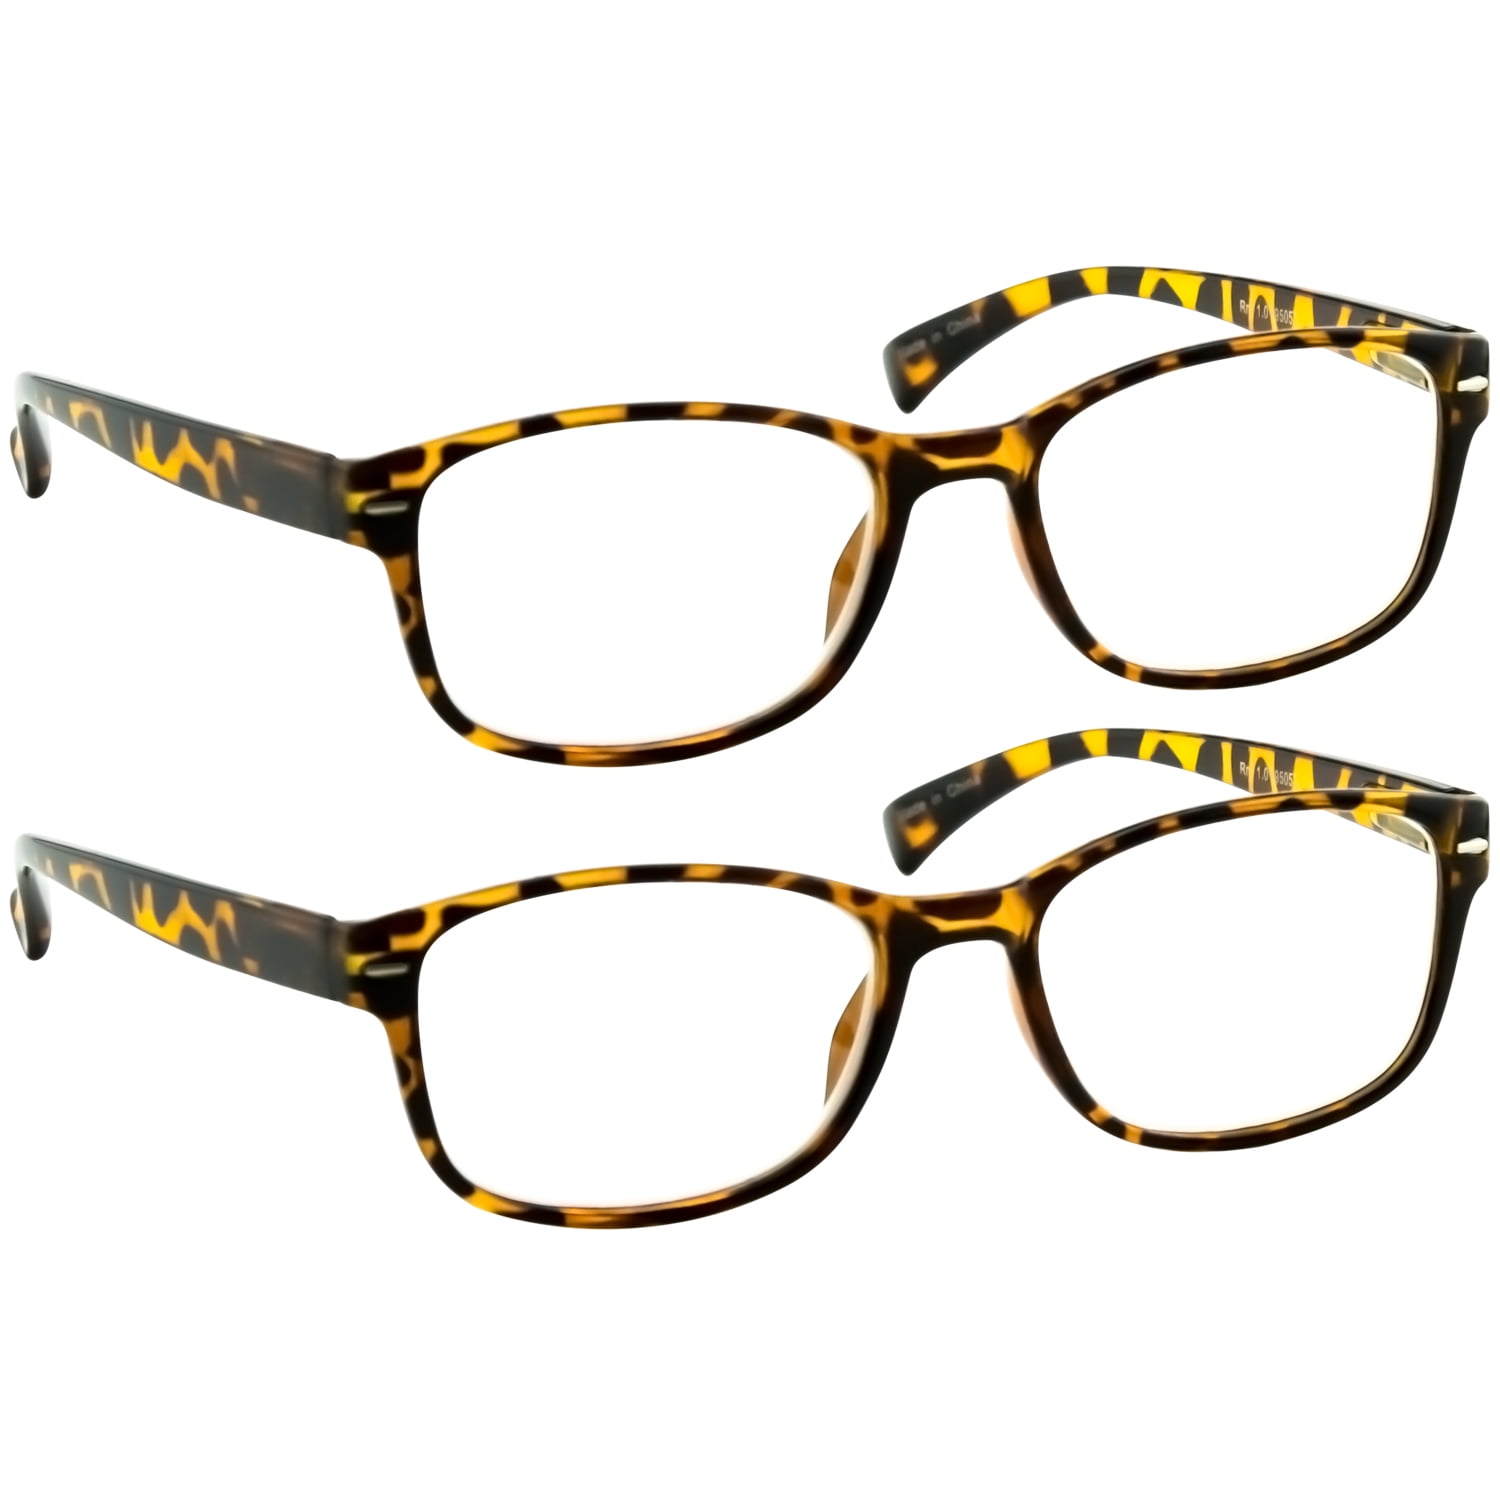 Begrænsninger Kompliment Falde sammen Reading Glasses 2 Pack | Always Have a Timeless Look, Crystal Clear Vision,  Comfort Fit With Sure-Flex Spring Hinge Arms & Dura-Tight Screws -  Walmart.com